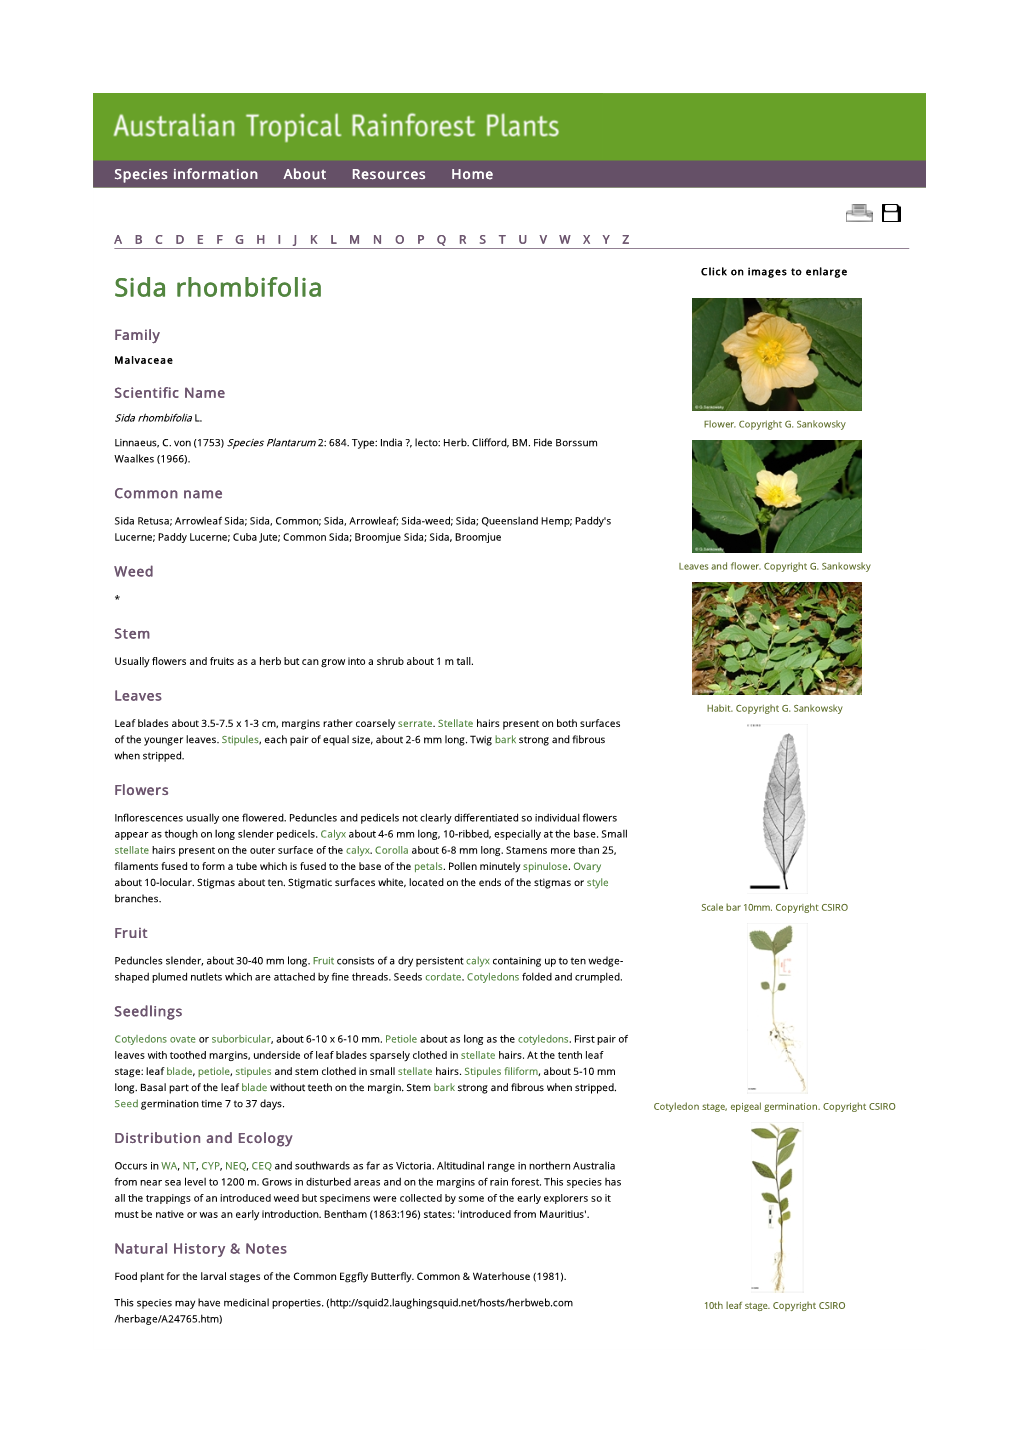 Sida Rhombifolia Click on Images to Enlarge